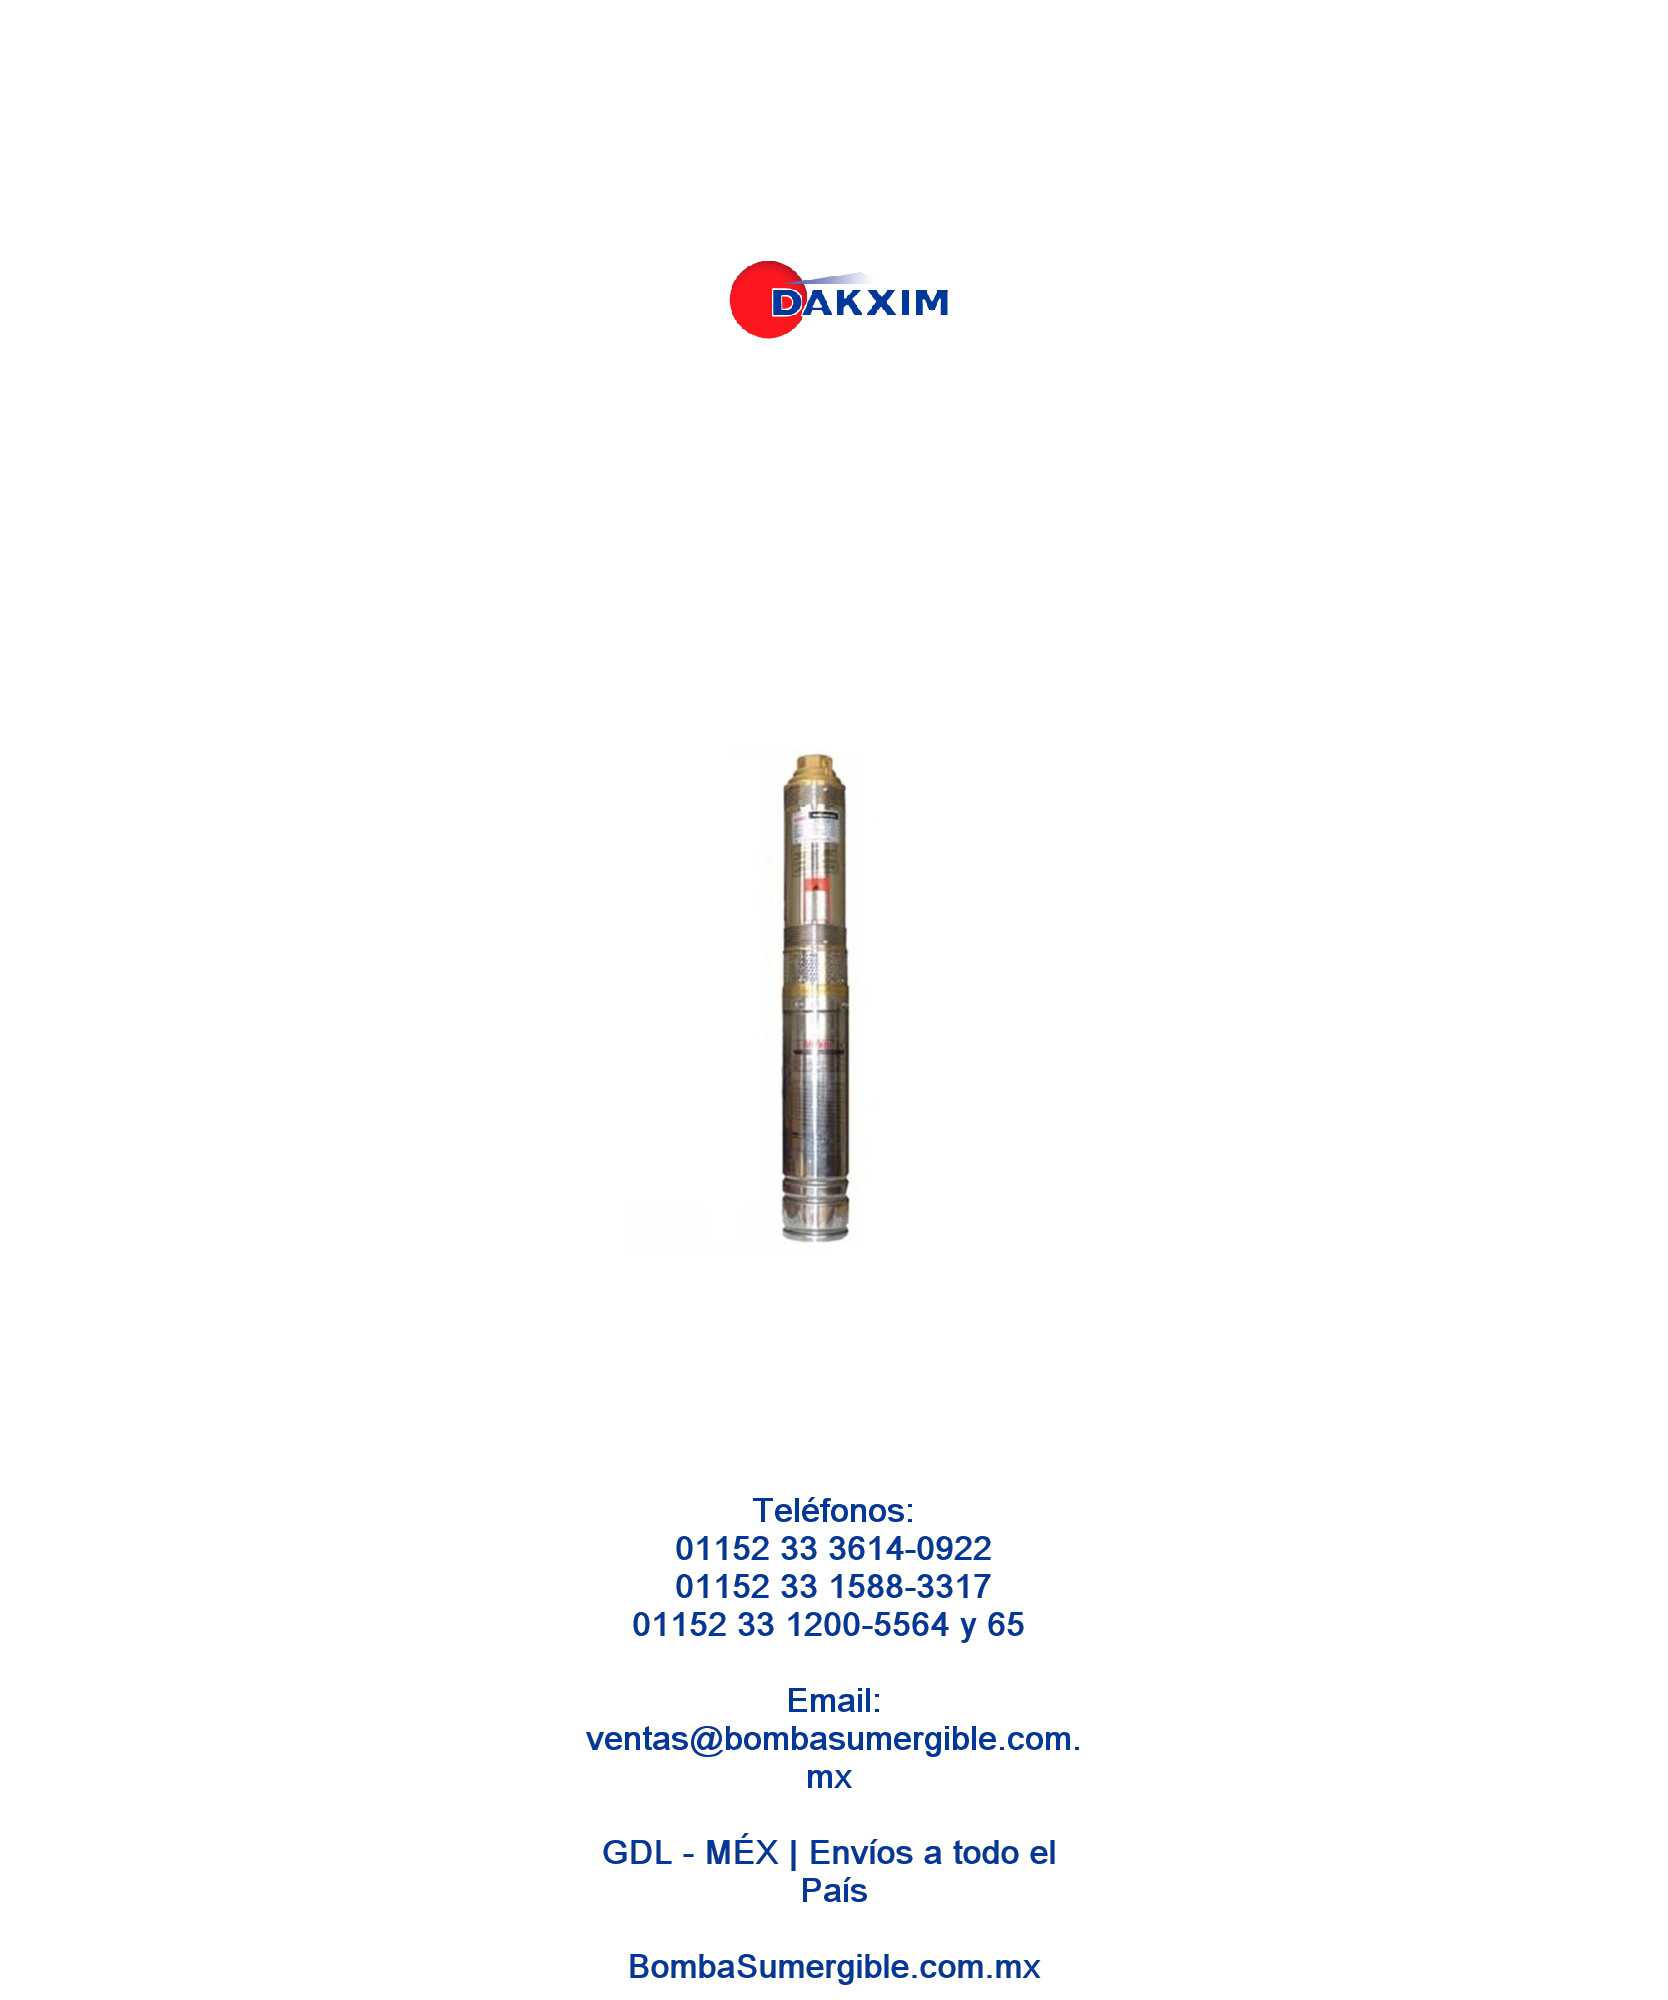 Bomba Sumergible Antarix Modelo Msam1d32 1 Hp - DAKXIM - Mexico